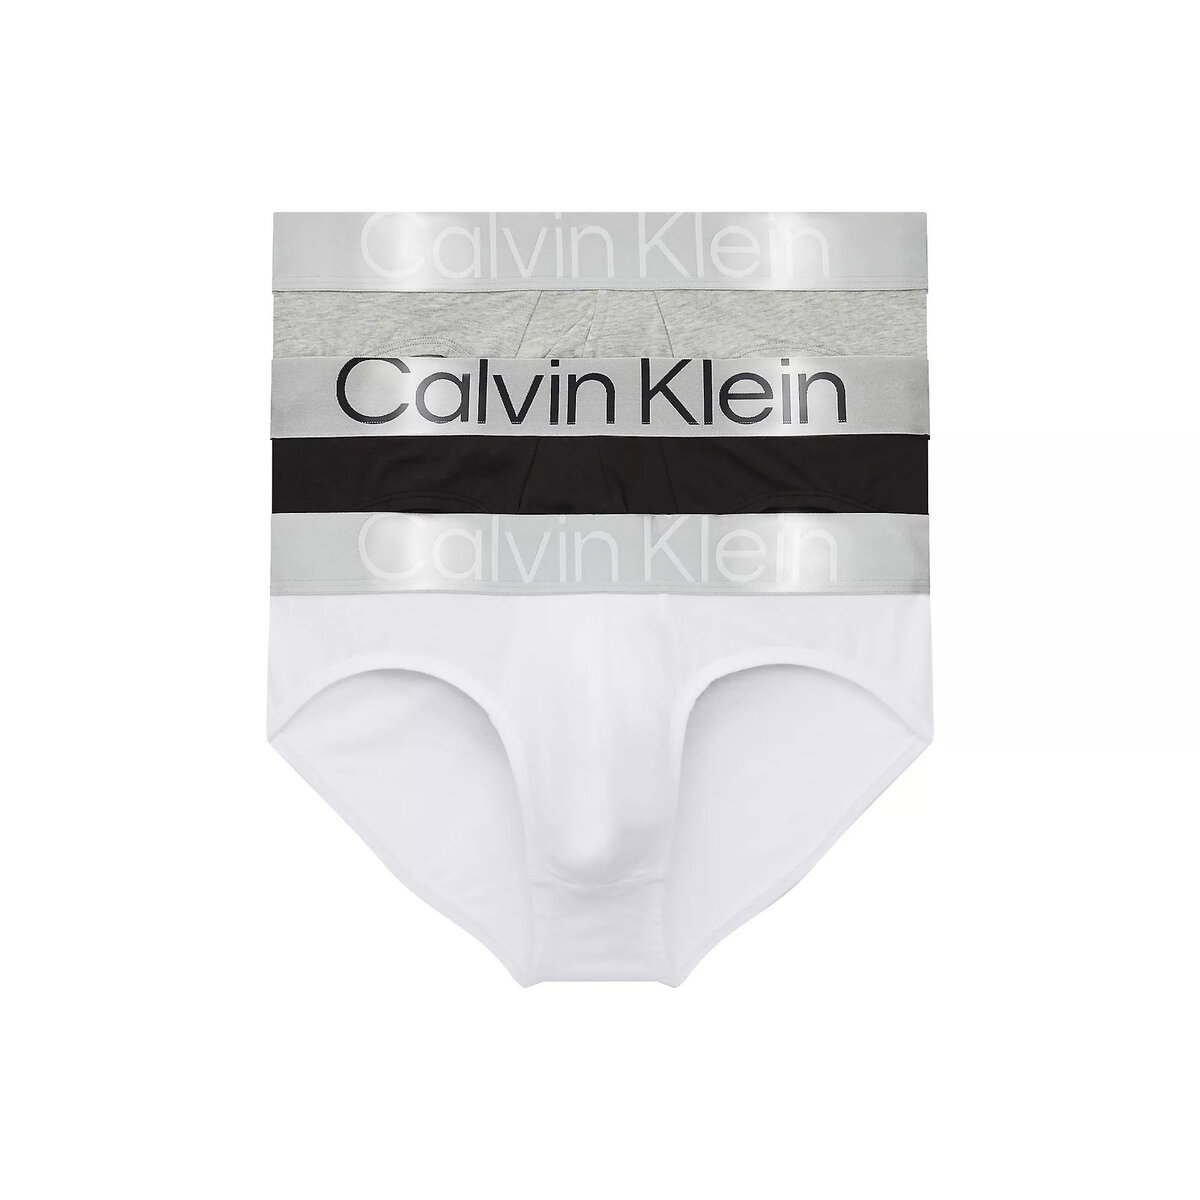 Bio bavlněné pánské slipy - Calvin Klein (3 ks), S i652_000NB3129AMPI002